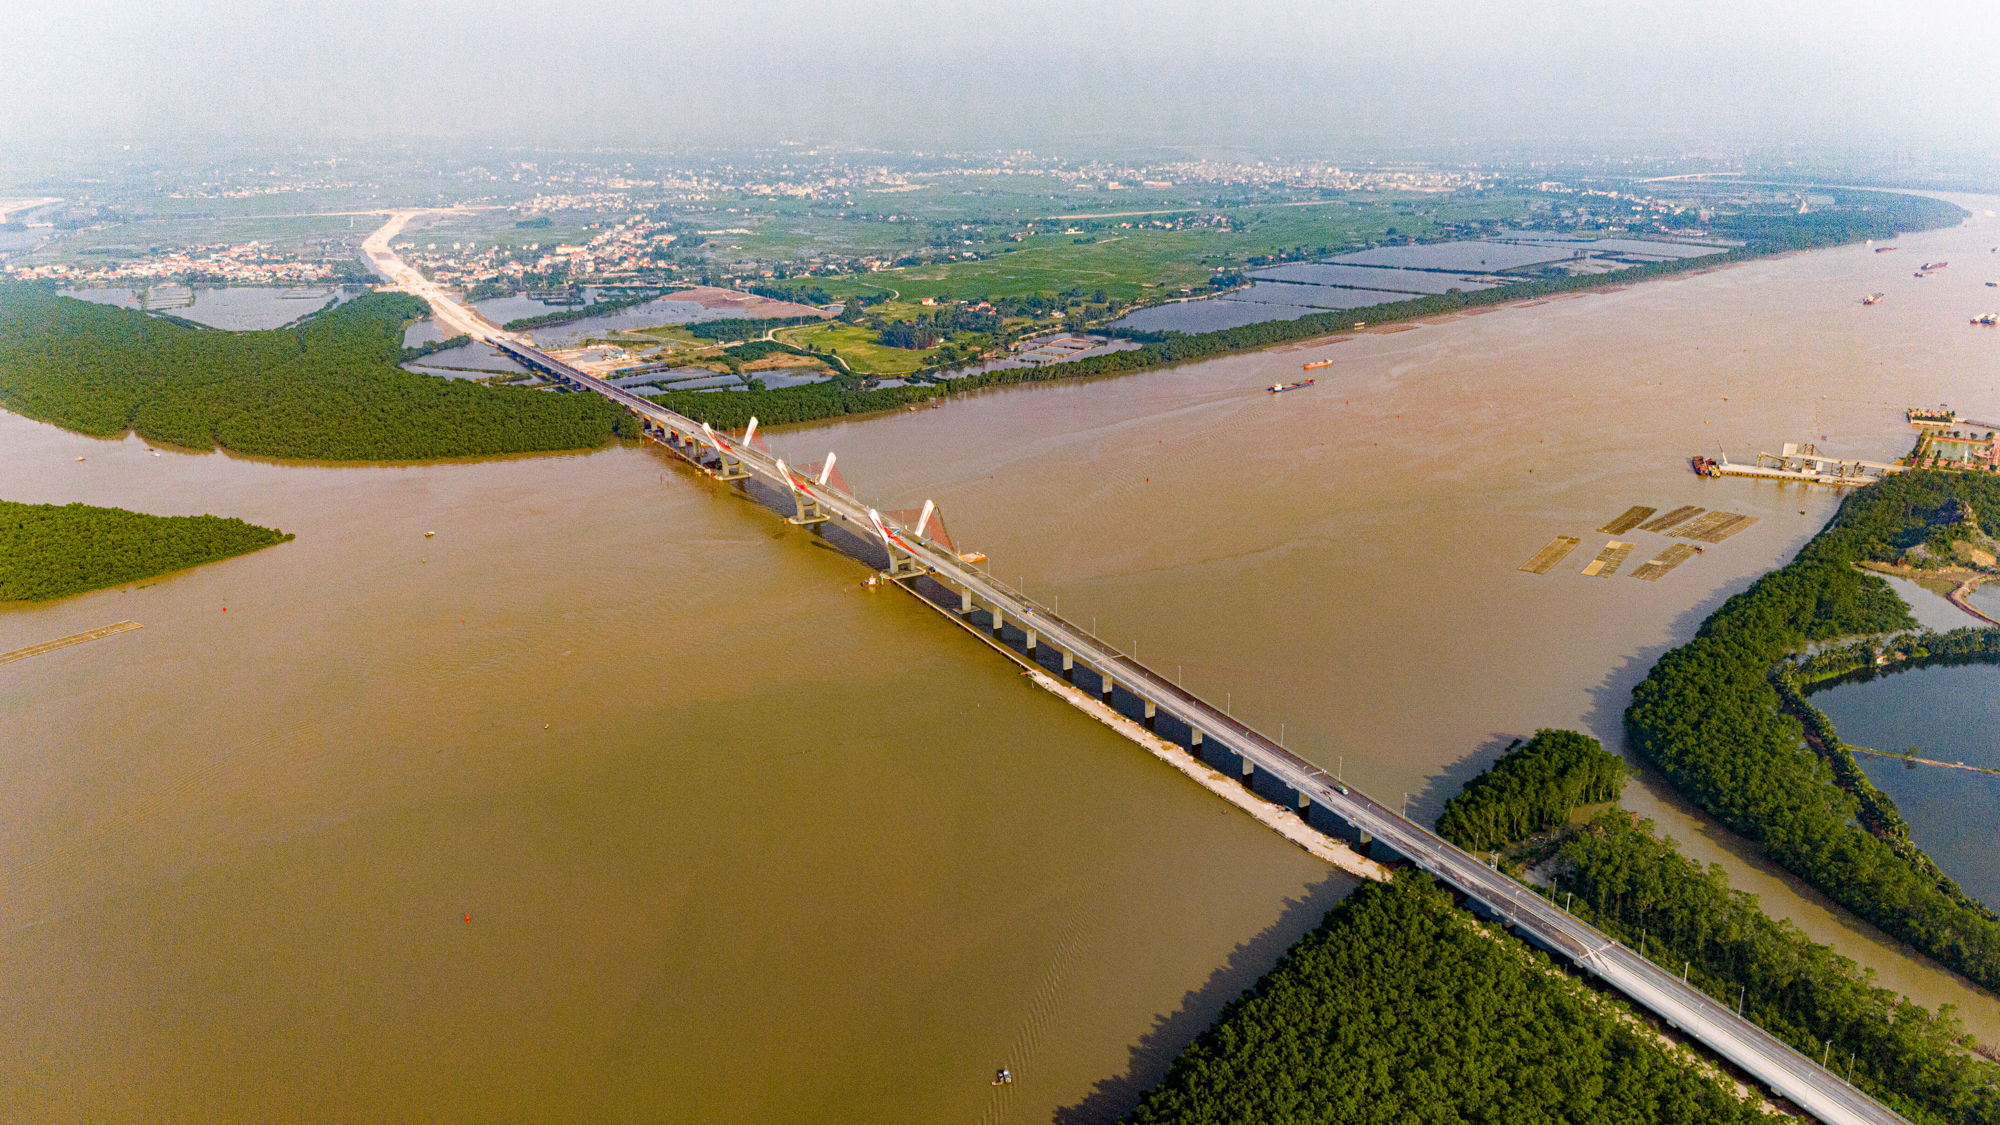 Toàn cảnh khu vực được xây cây cầu trị giá 2.000 tỷ sắp hoàn thành, kết nối Hải Phòng và Quảng Ninh, đưa tuyến phà sông lớn nhất miền Bắc về “nghỉ hưu”.- Ảnh 1.